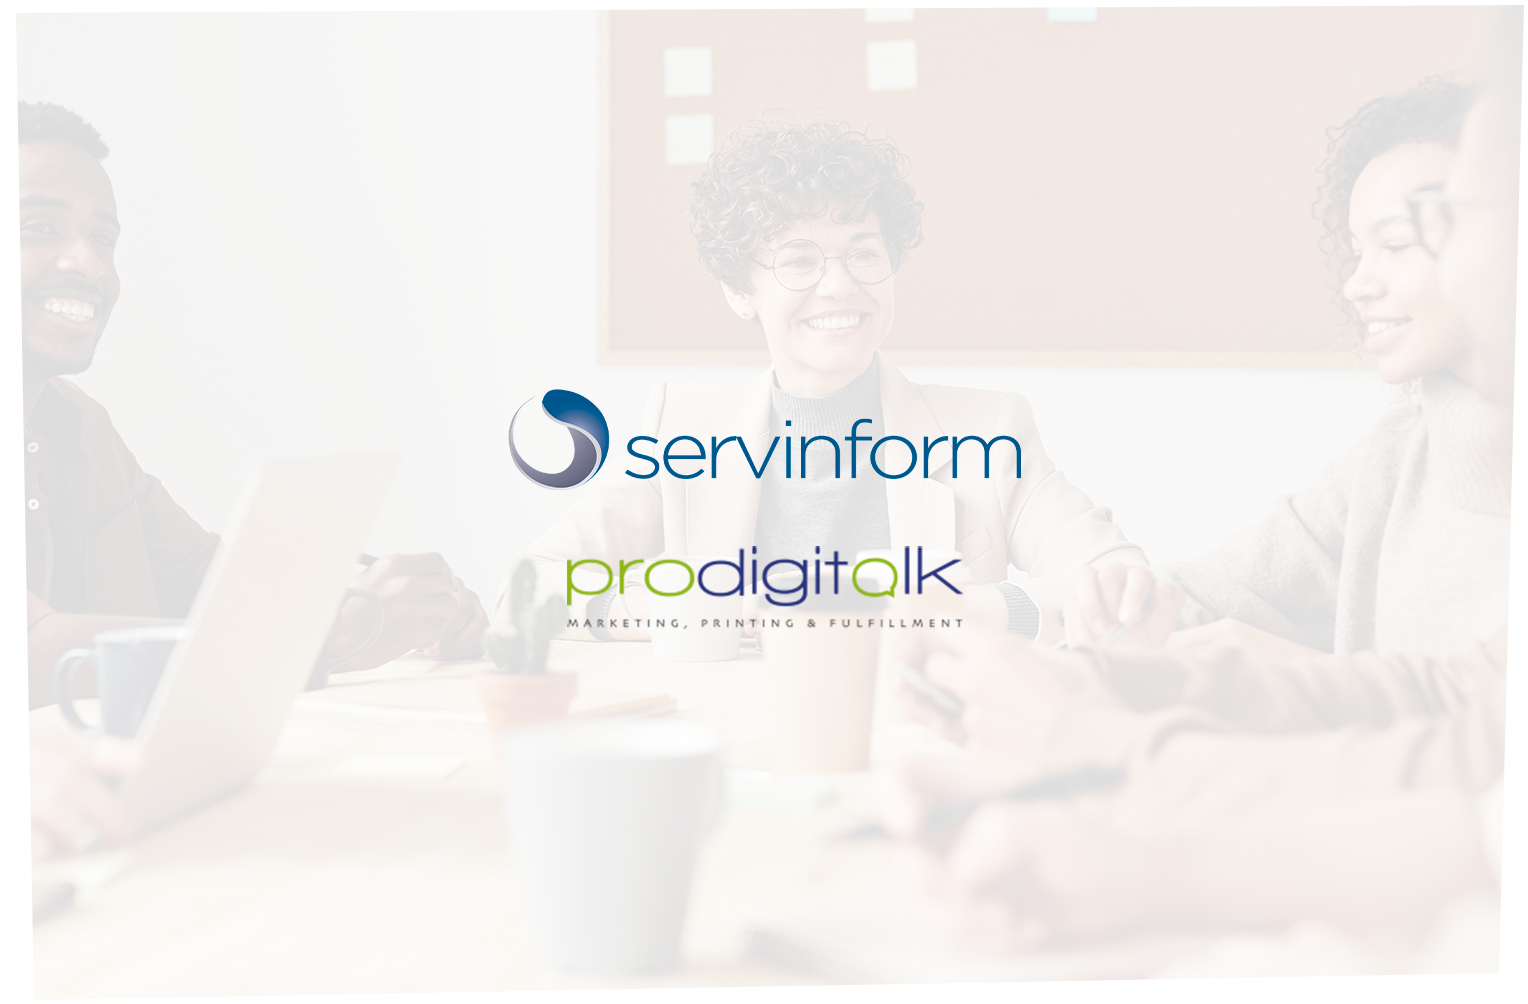 Servinform refuerza sus áreas de negocio con la adquisición de Prodigitalk